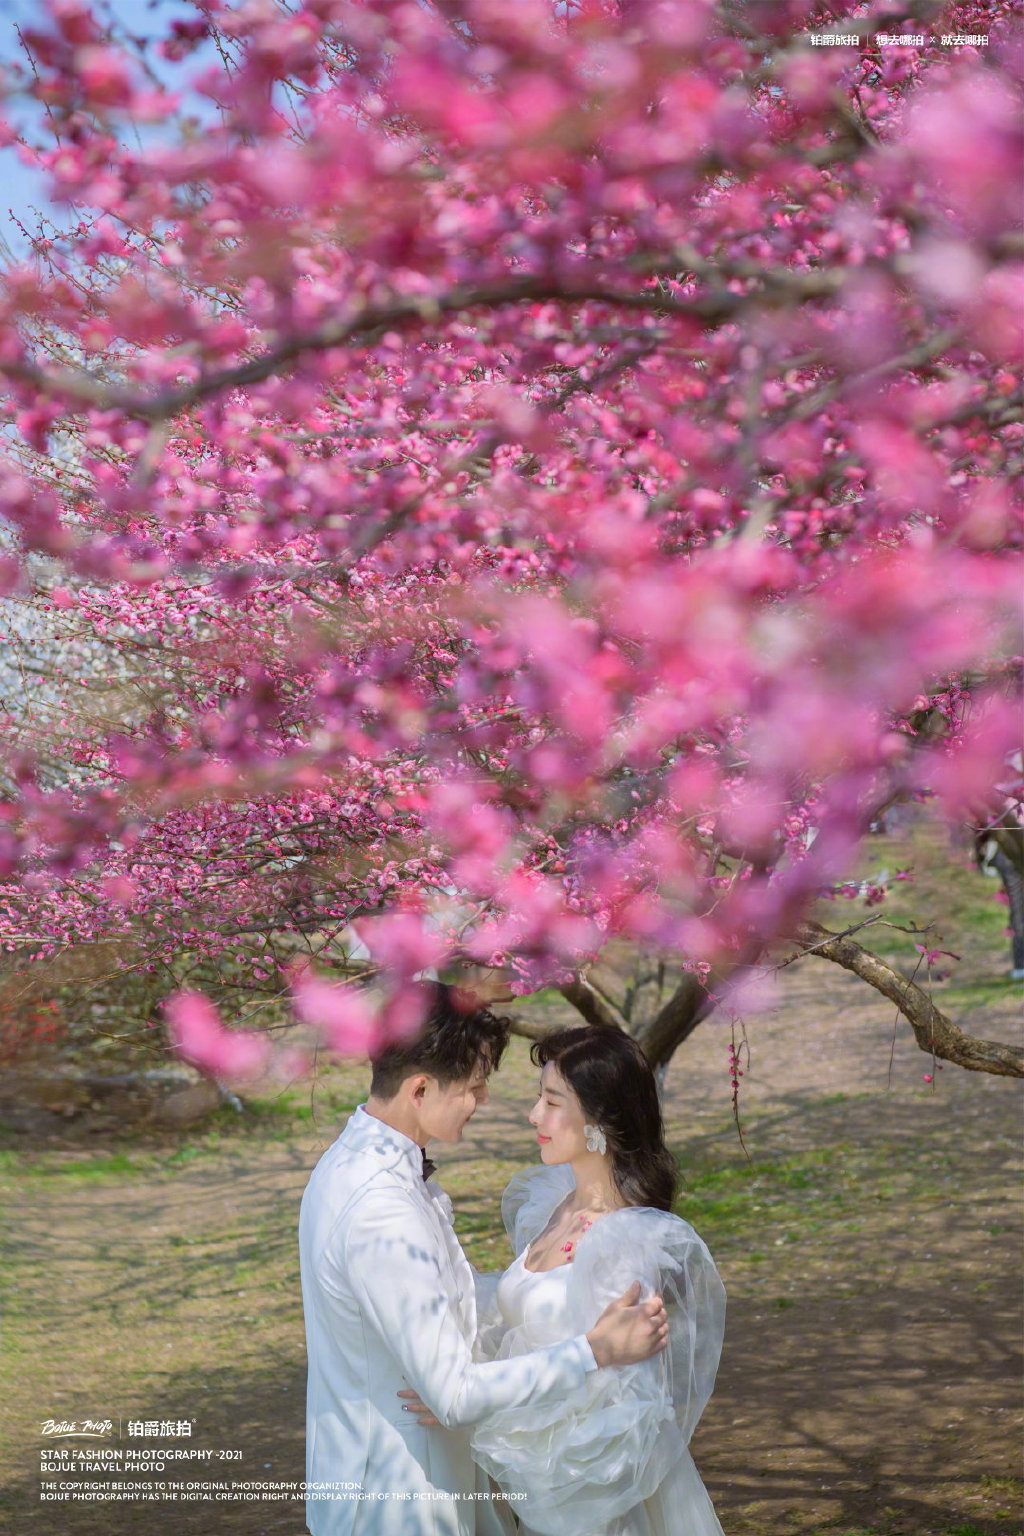 到铂爵旅拍少女梦幻花海,拍一组春日限定浪漫花系婚纱照!